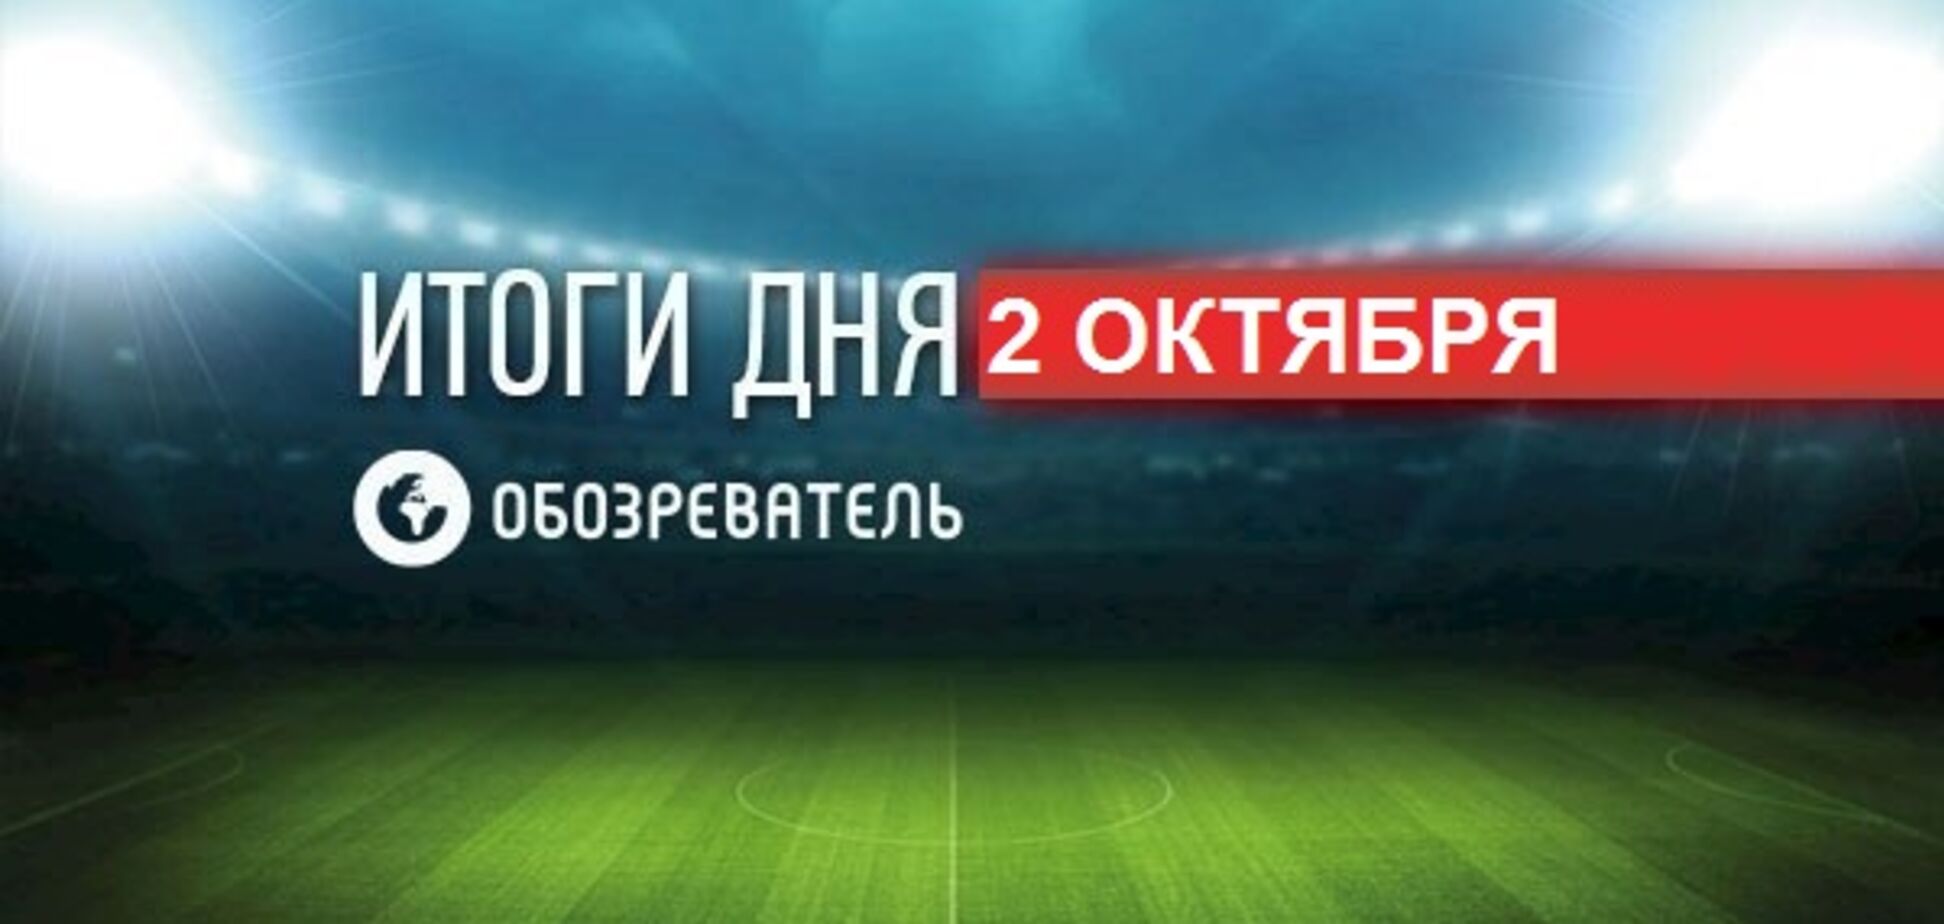 ФИФА наказала Украину за матчи отбора ЧМ-2018: спортивные итоги 2 октября